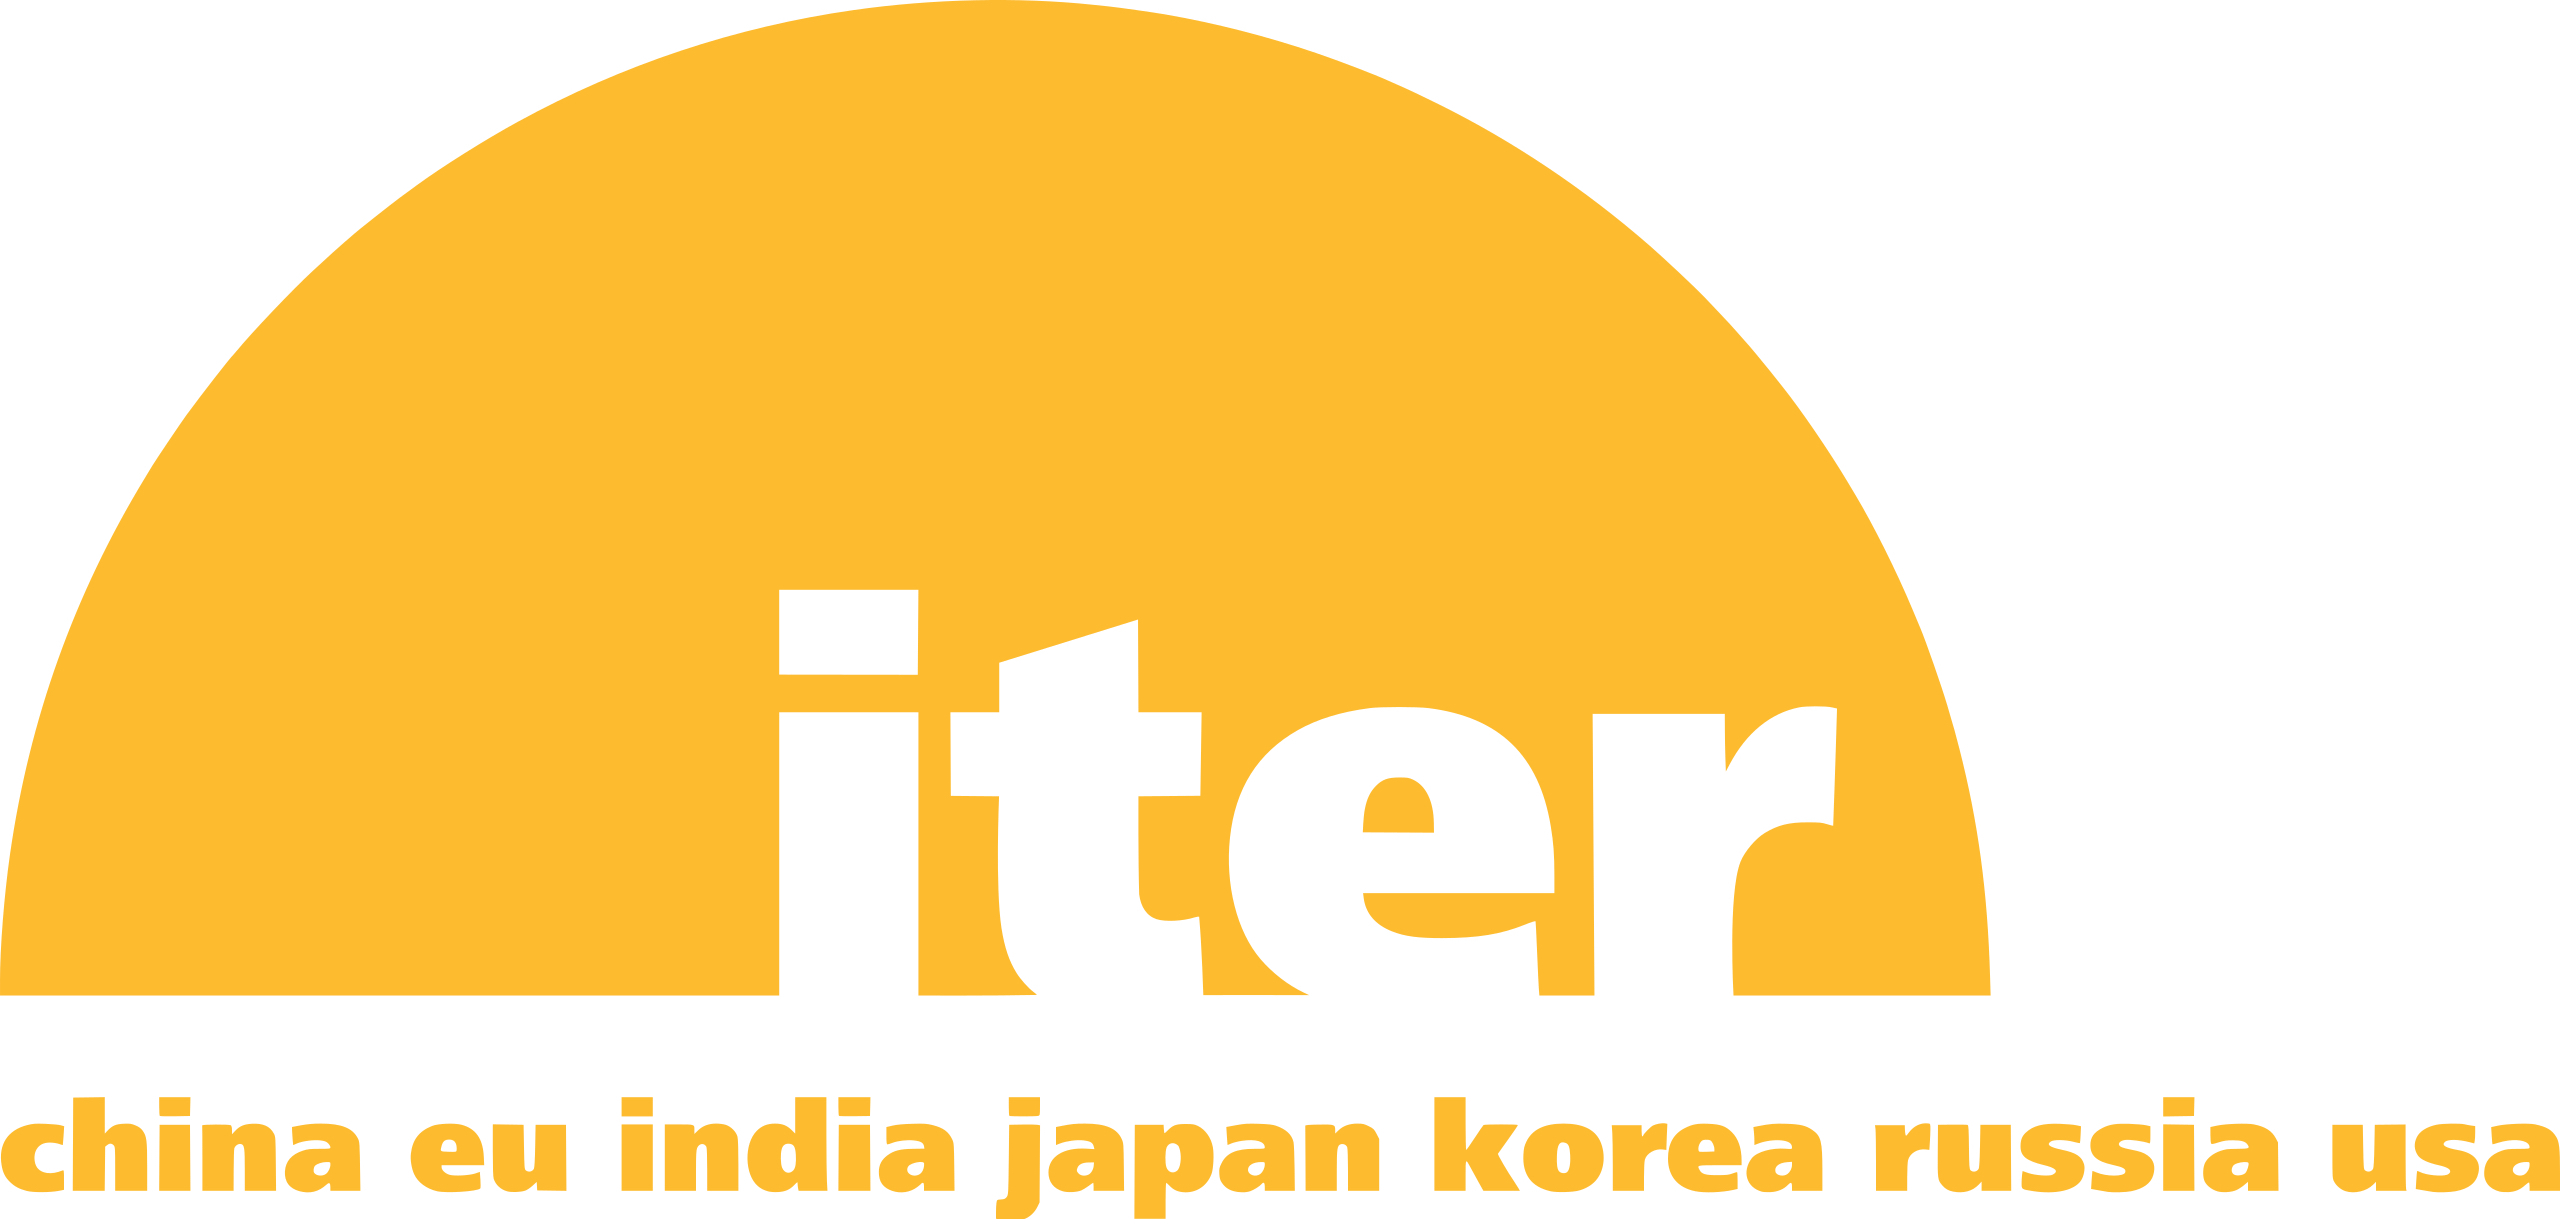 Logo ITER